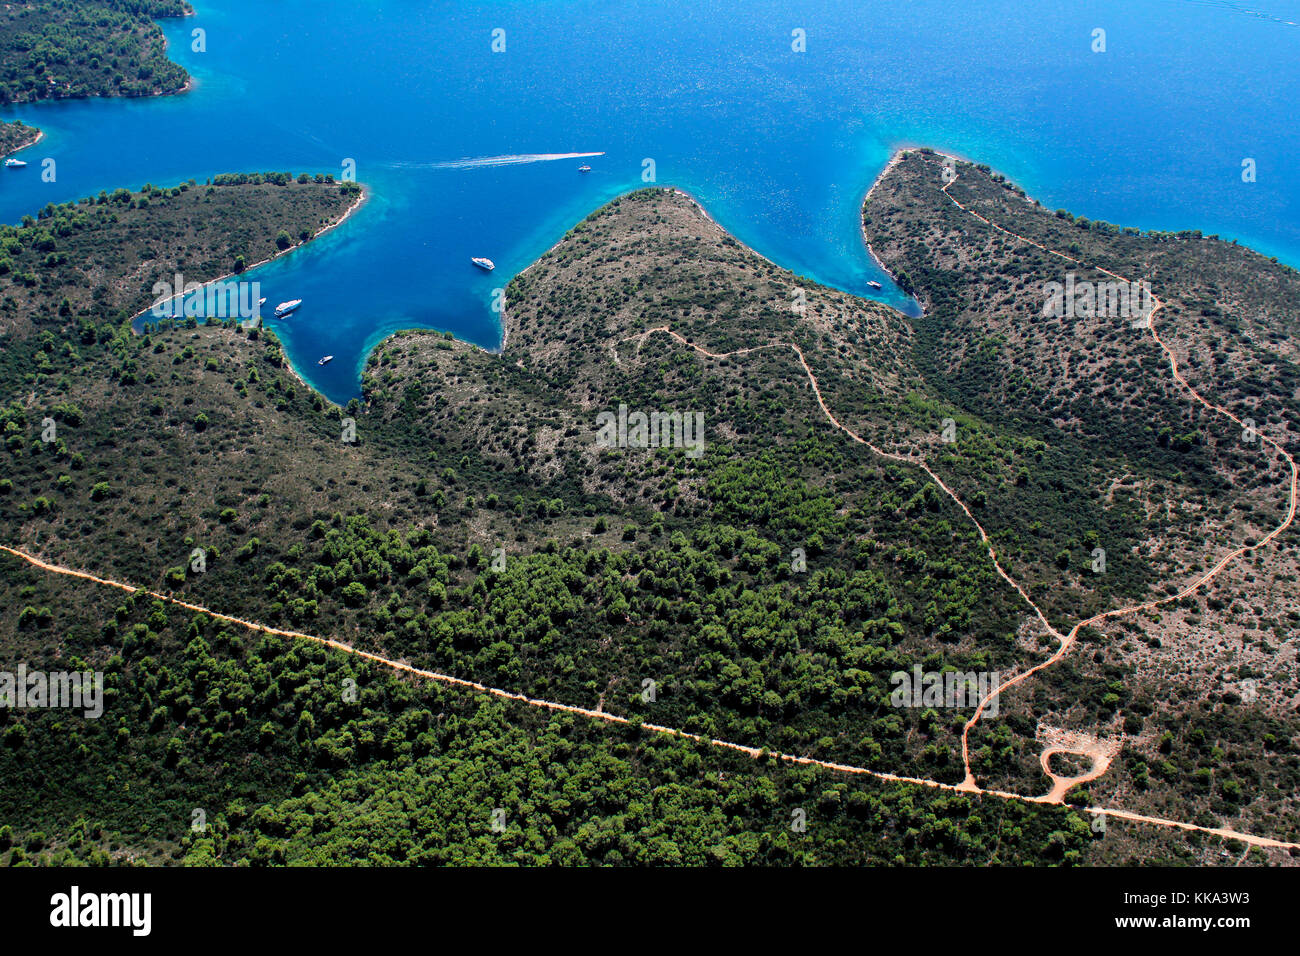 Tomada desde el aire, algunas bahías en la isla de Hvar en el mar Adriático, la más larga y la más soleada de la isla croata y una de las más bellas islas en el world Foto de stock